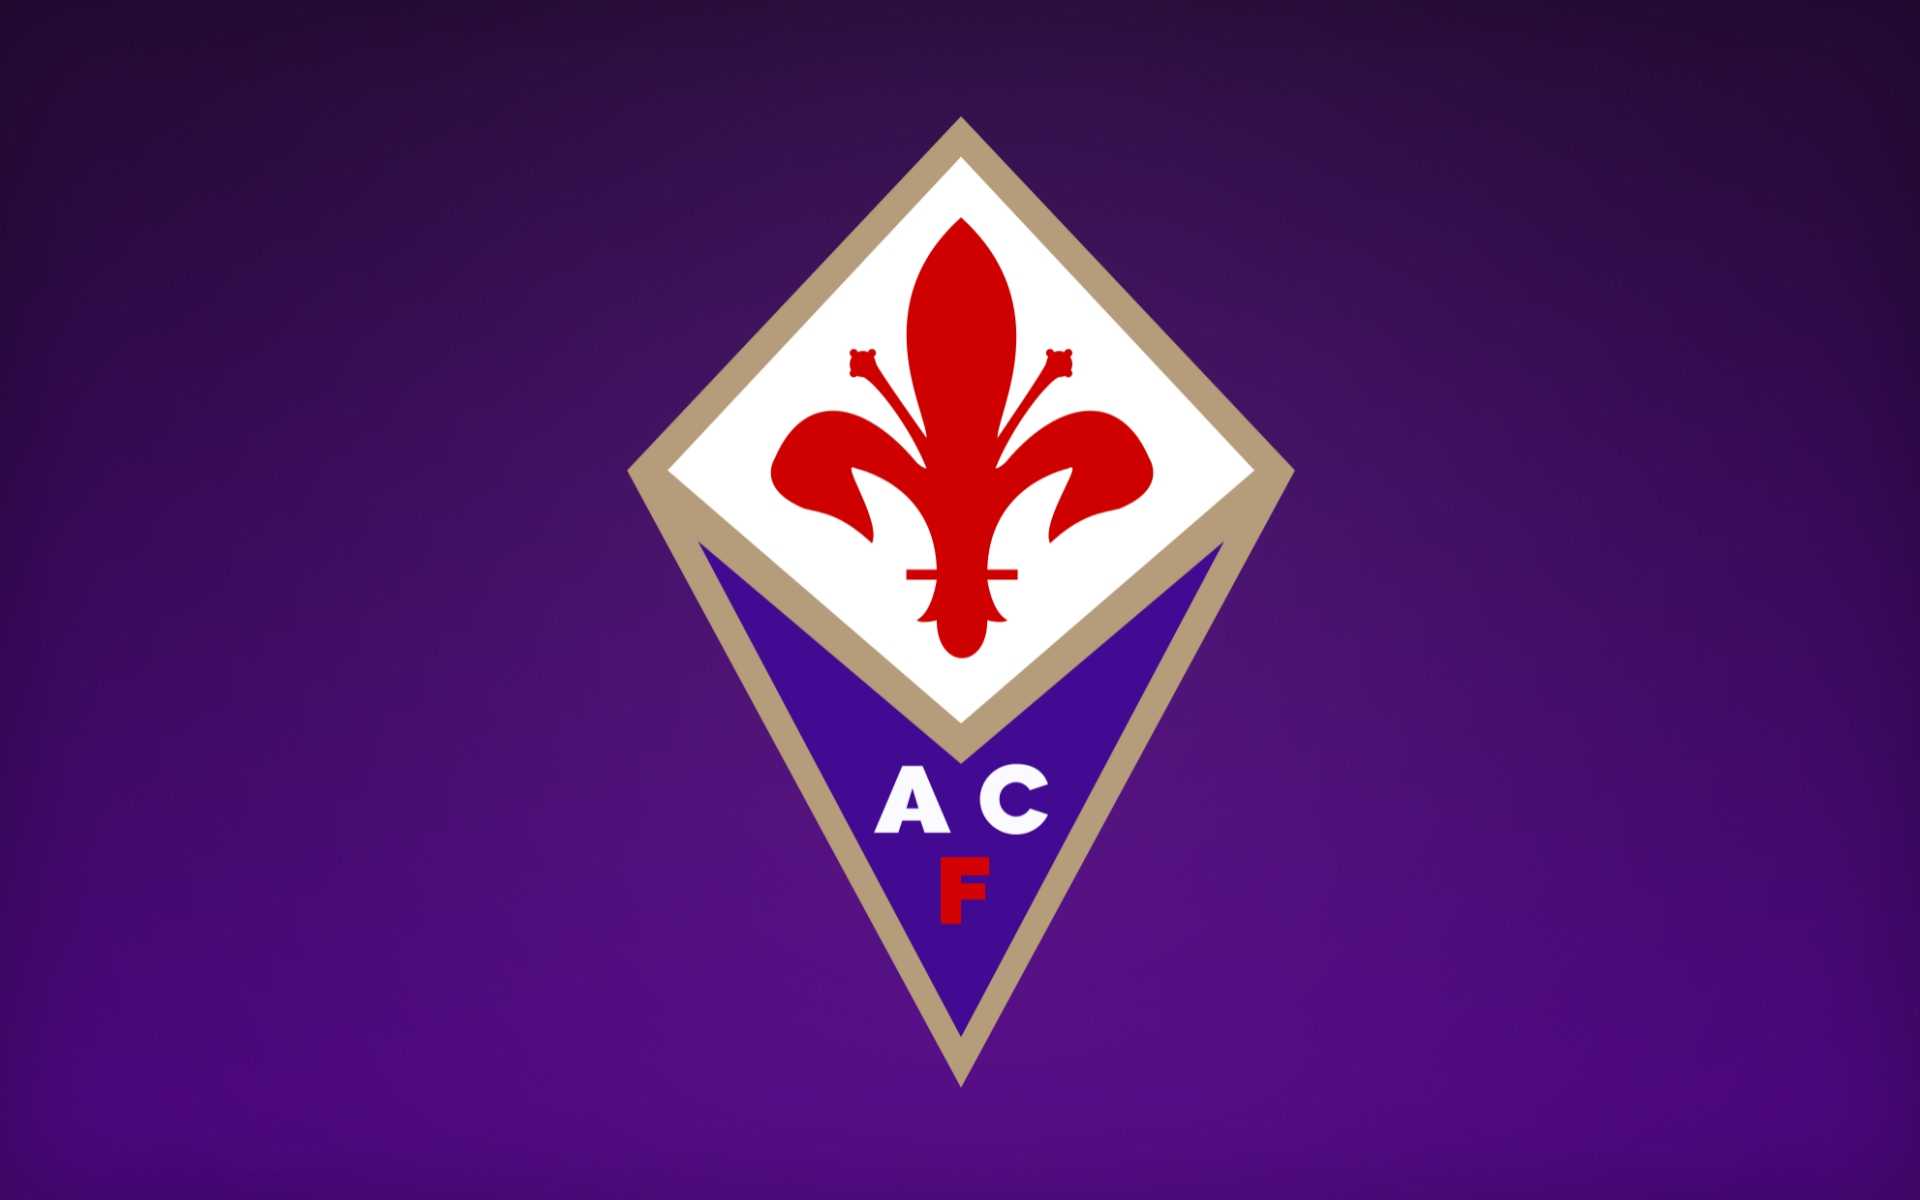 UFFICIALE - La Fiorentina chiude il mercato con Callejon - 11contro11